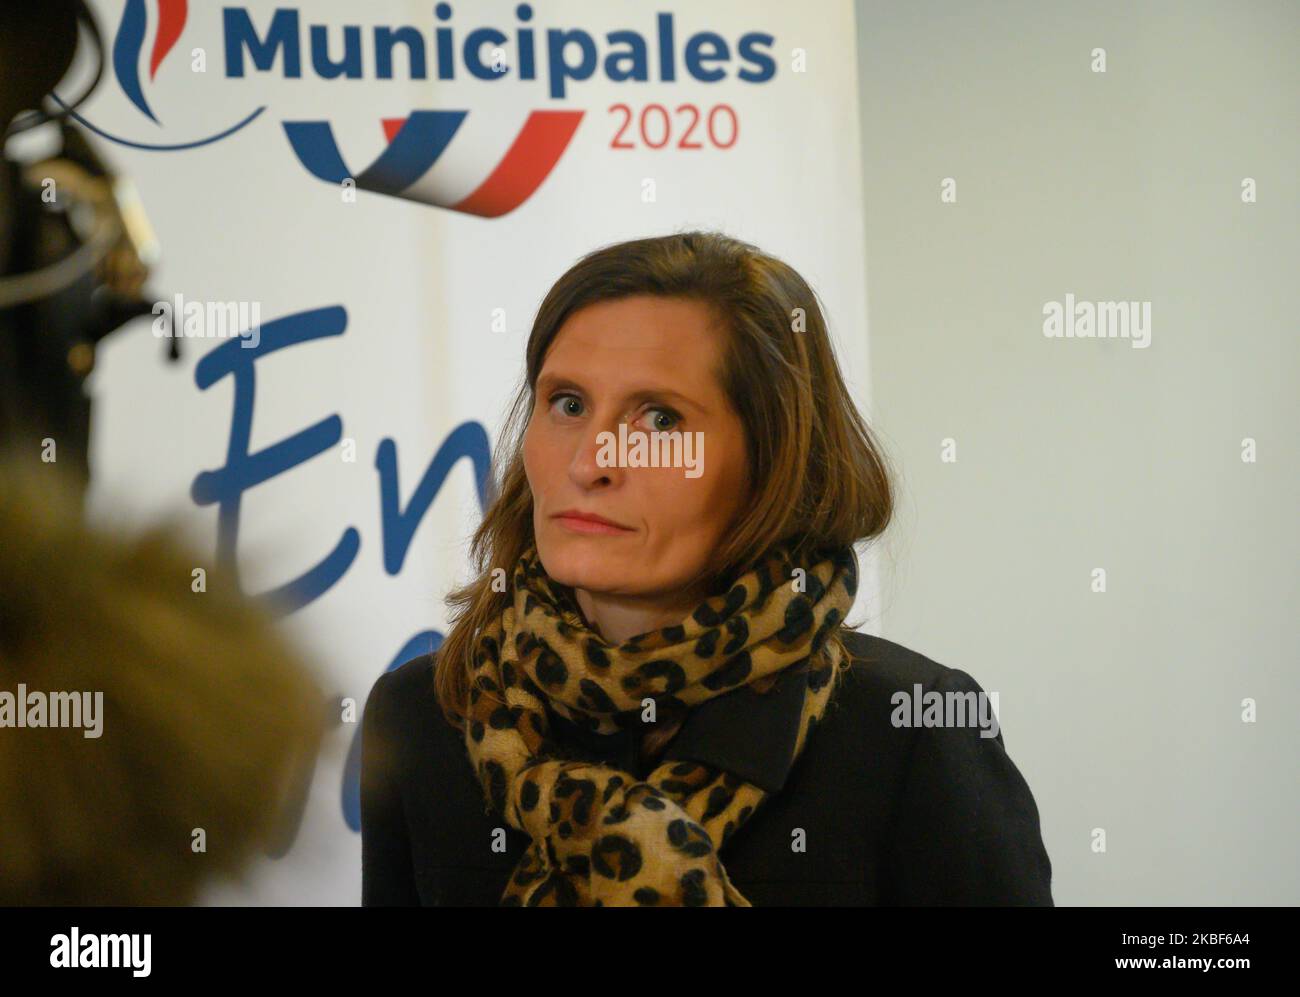 Eleonore Revel, Rassemblement National (RN) candidato per l'elezione municipale del 2020 marzo a Nantes, Francia, il 23 gennaio 2020. (Foto di Estelle Ruiz/NurPhoto) Foto Stock